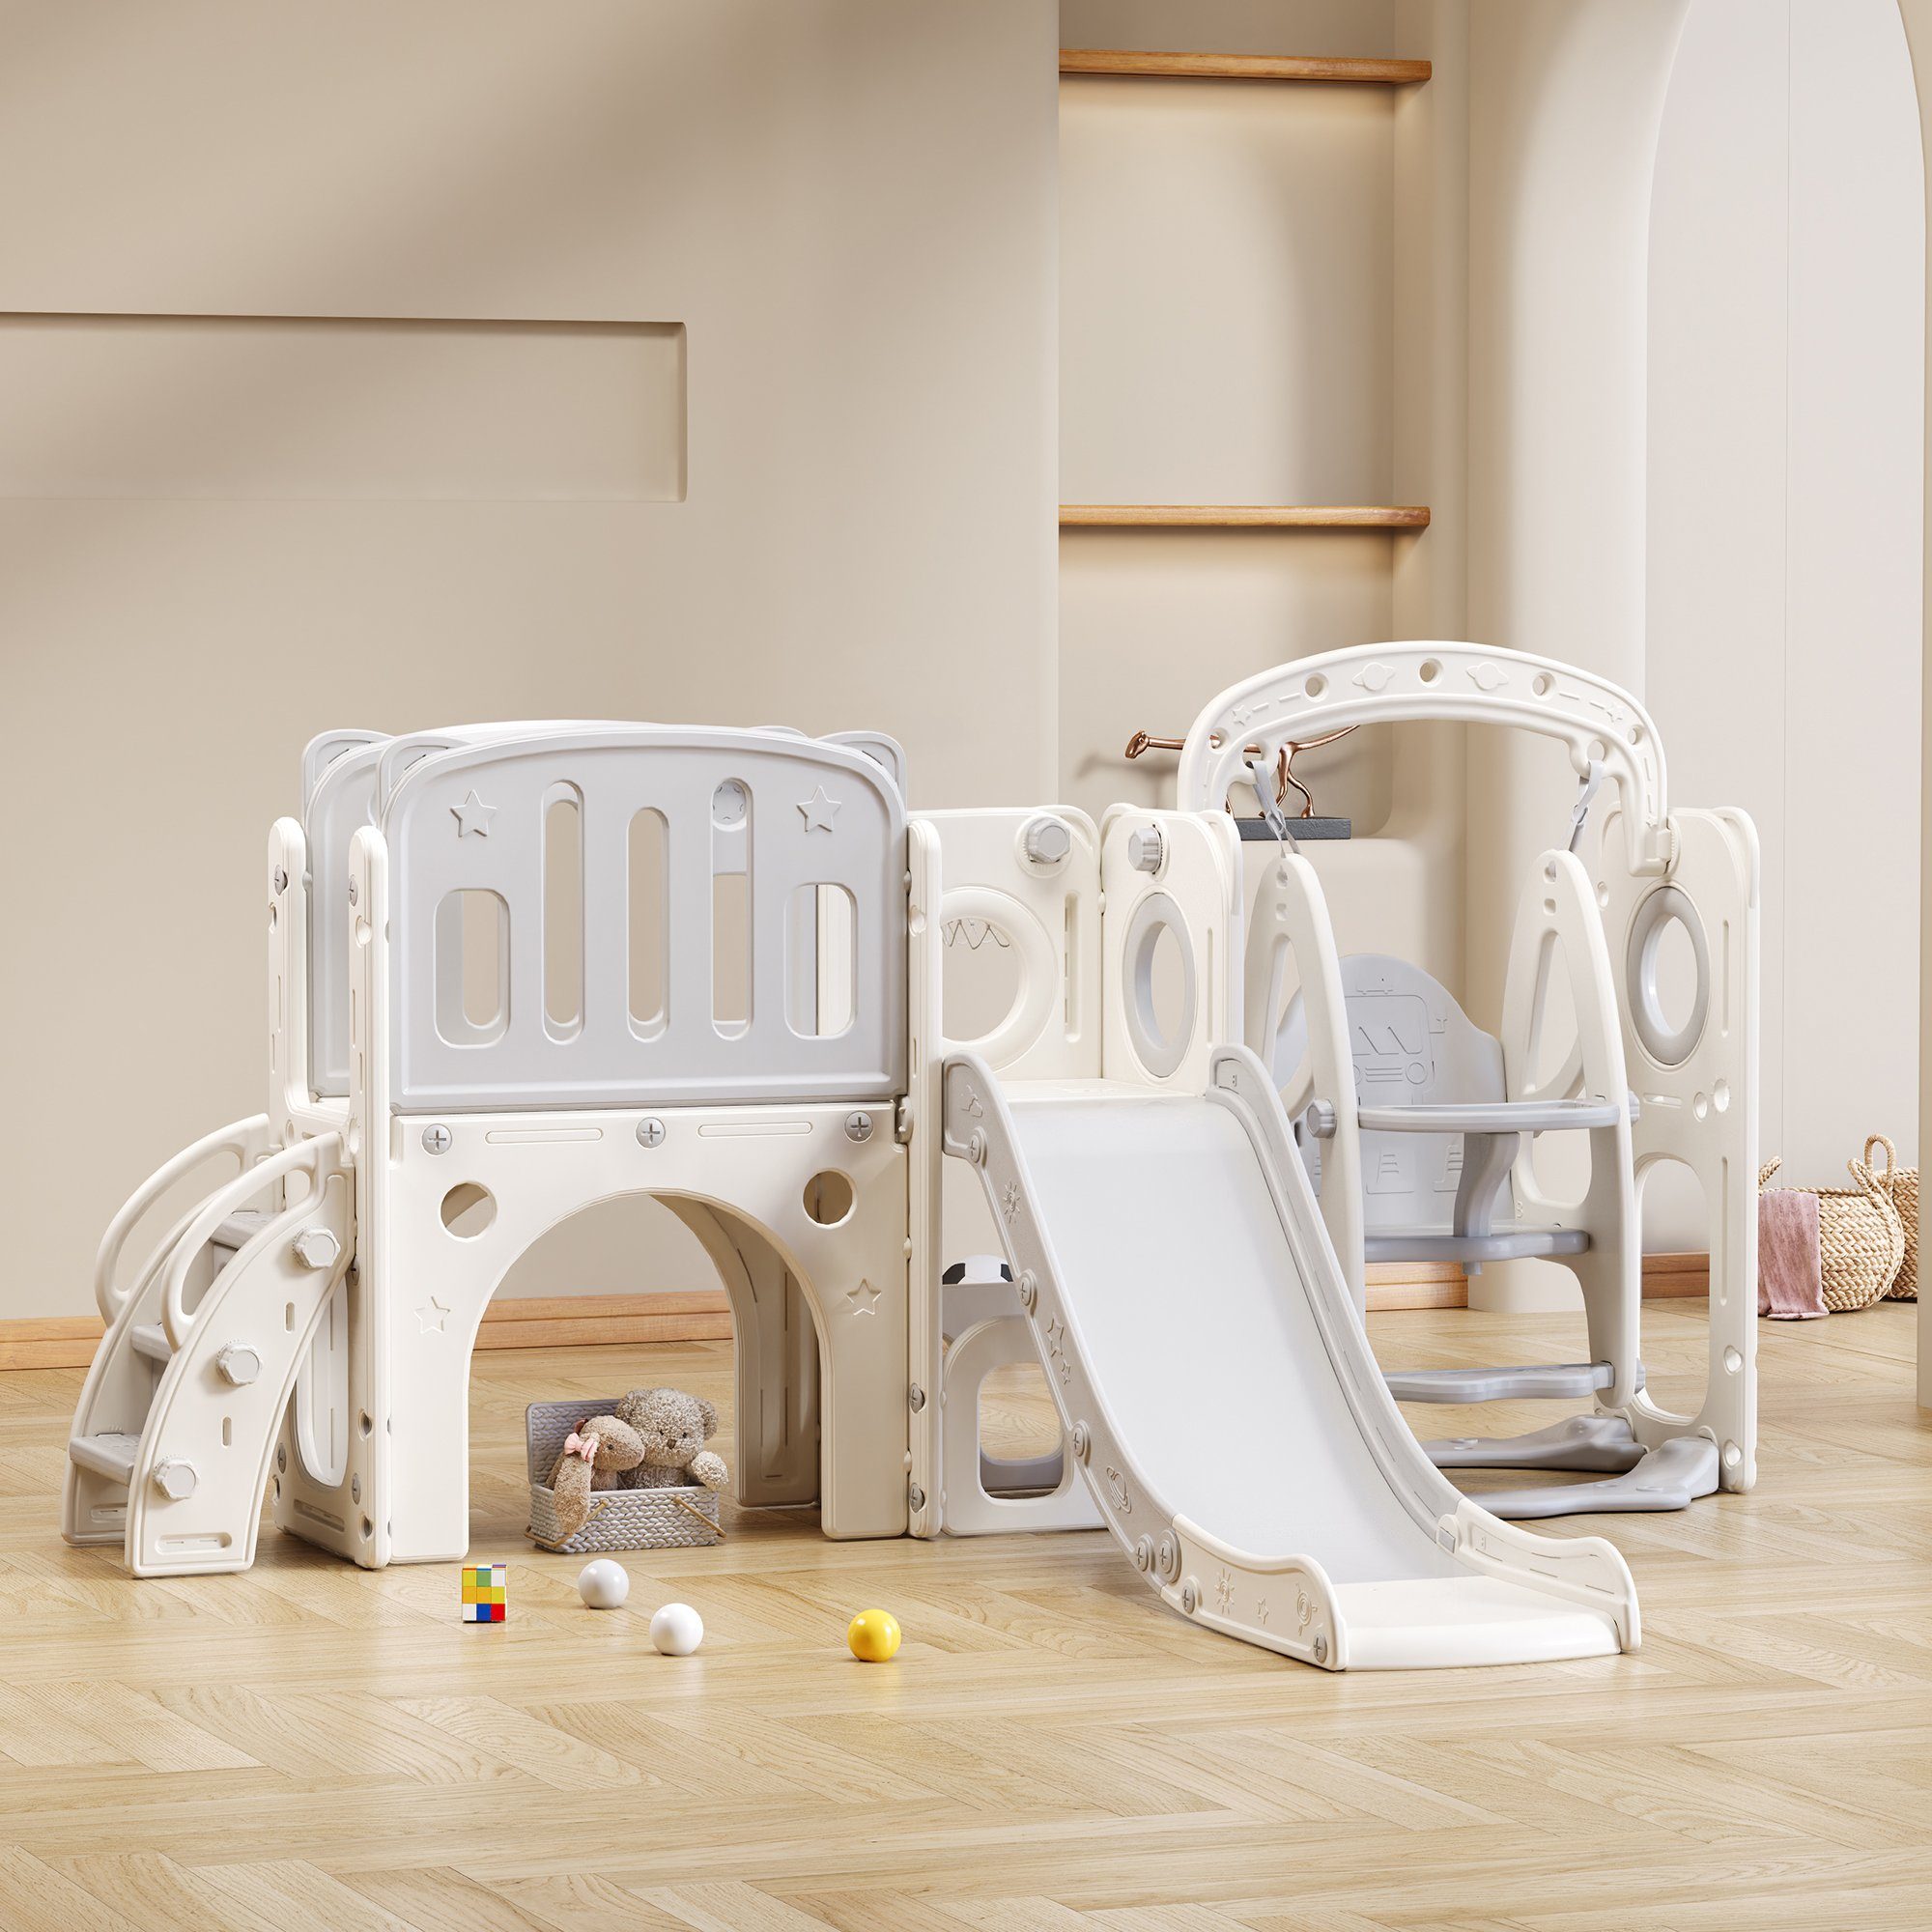 REDOM Rutsche 7 in 1 Kinderrutsche, (Spielturm mit Schaukel Plattform), Bodenschrankfach Basketballkorb und Kletterleiter